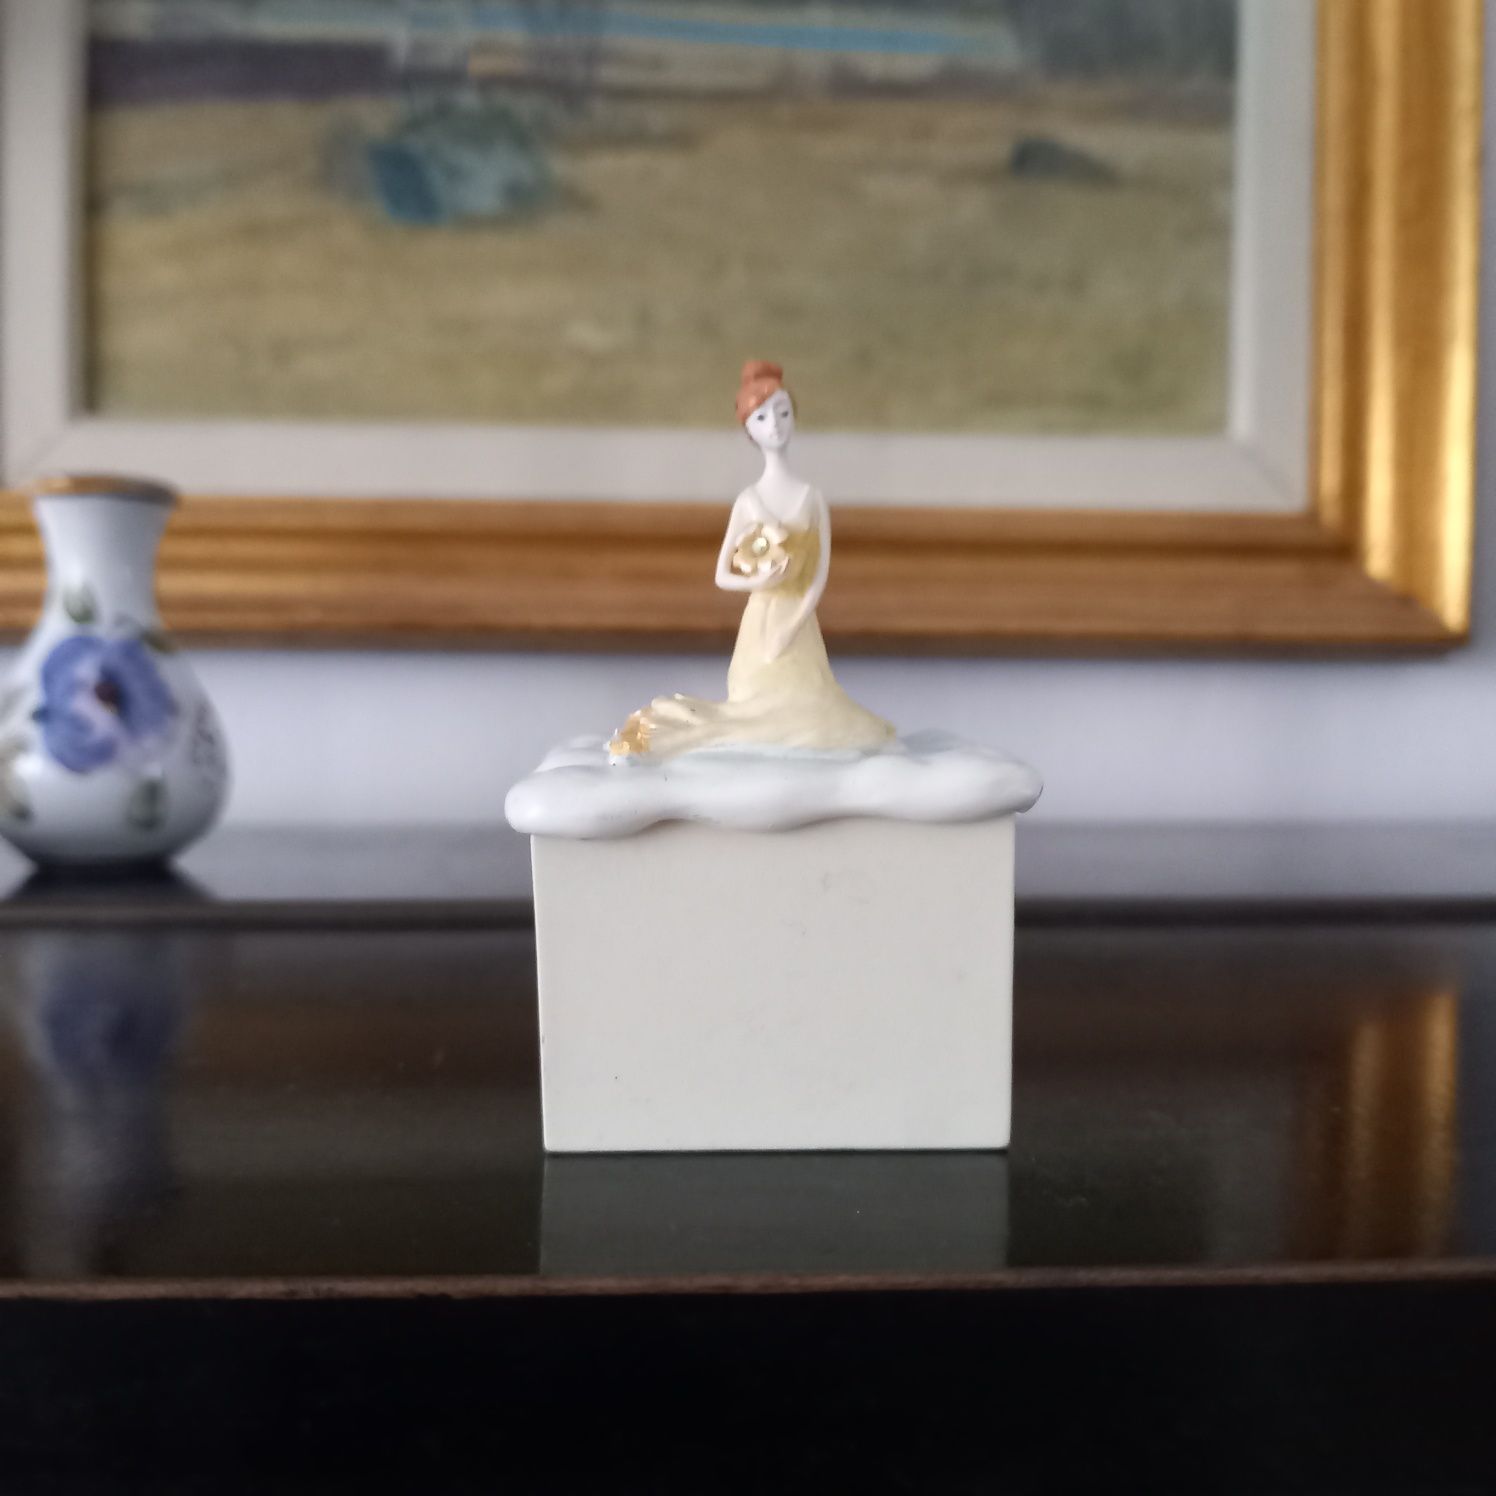 Urocze puzderko szkatułka z figurką ozdobna z księżniczką handpainted